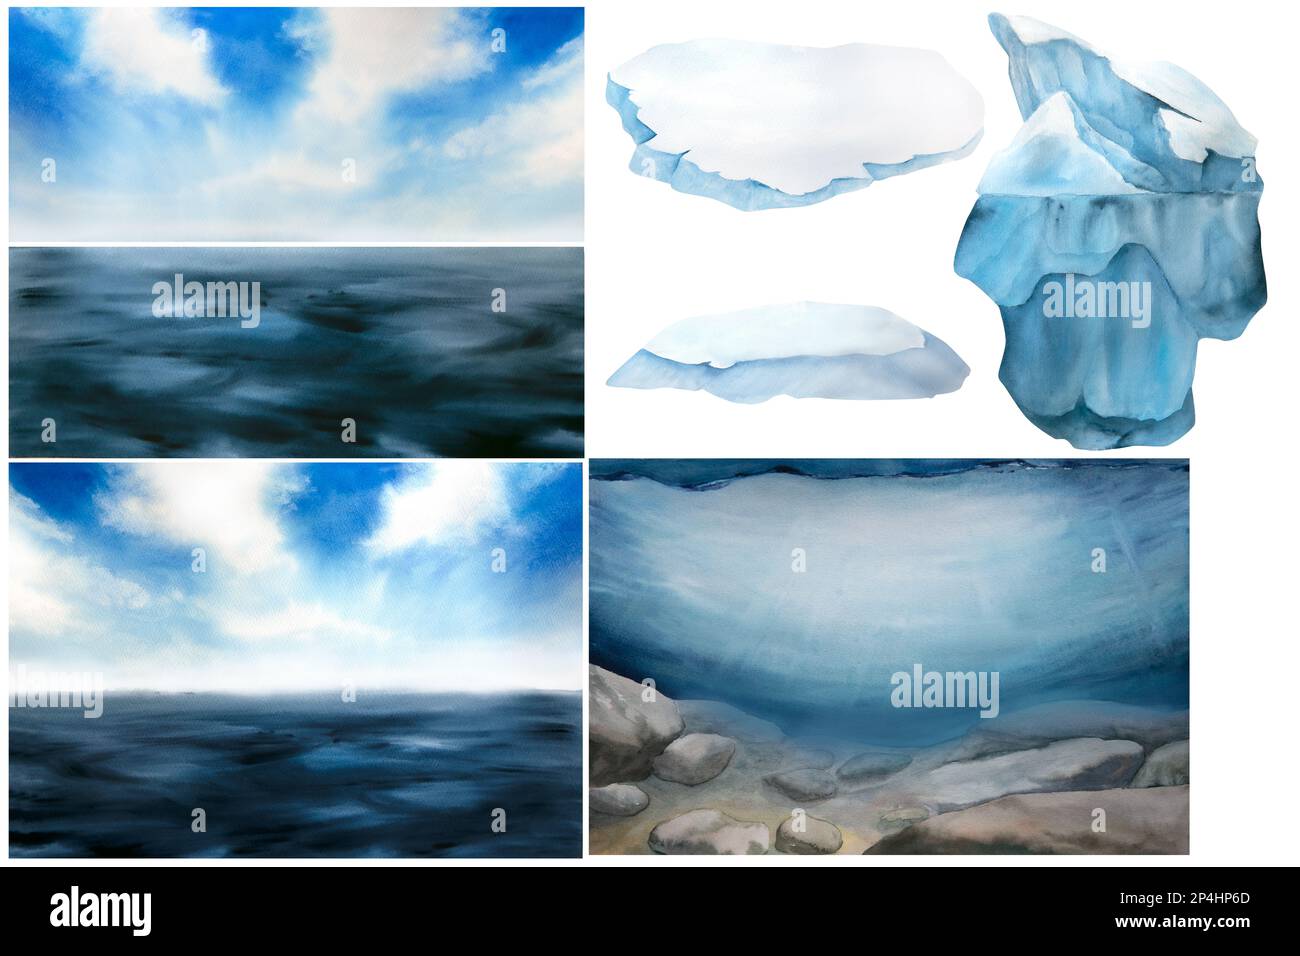 illustration aquarelle du paysage de la mer du nord et du monde sous-marin, ciel bleu, iceberg, floes de glace isolés sur fond blanc Banque D'Images